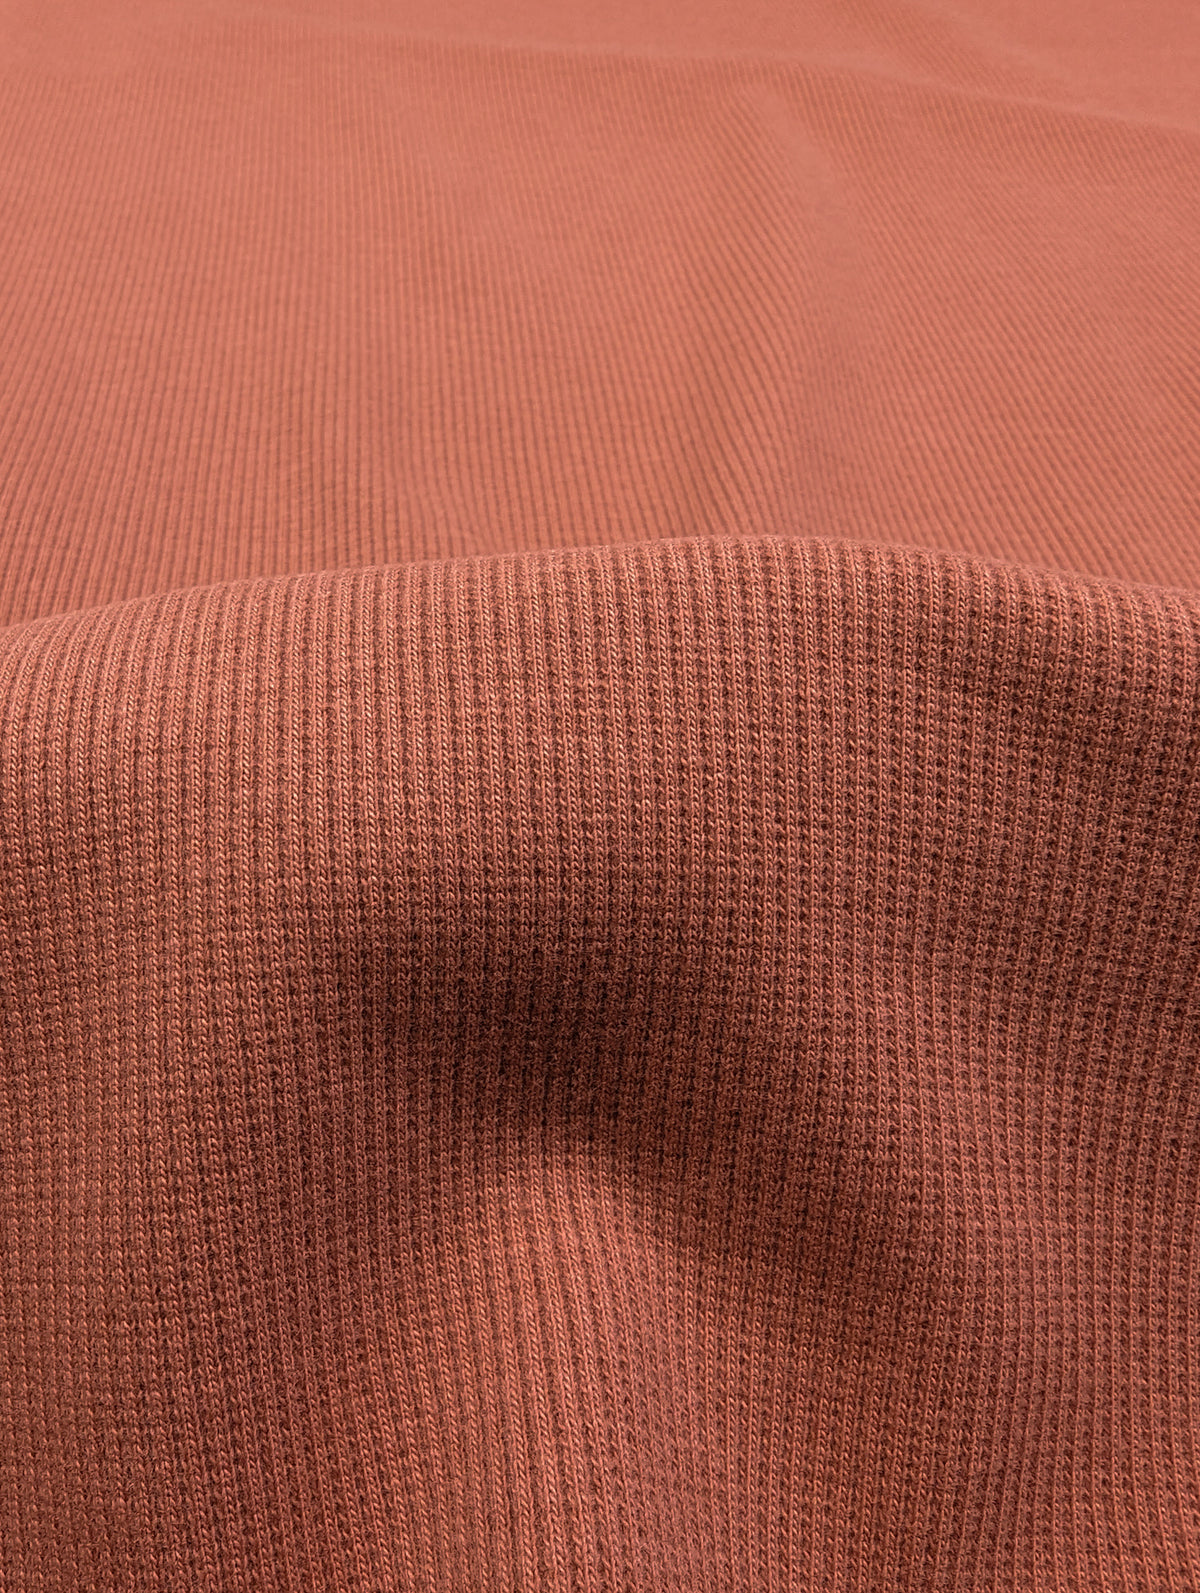 Cotton Jersey Baby Rib Knit - Family Fabrics Coordinate - Light Mahogany